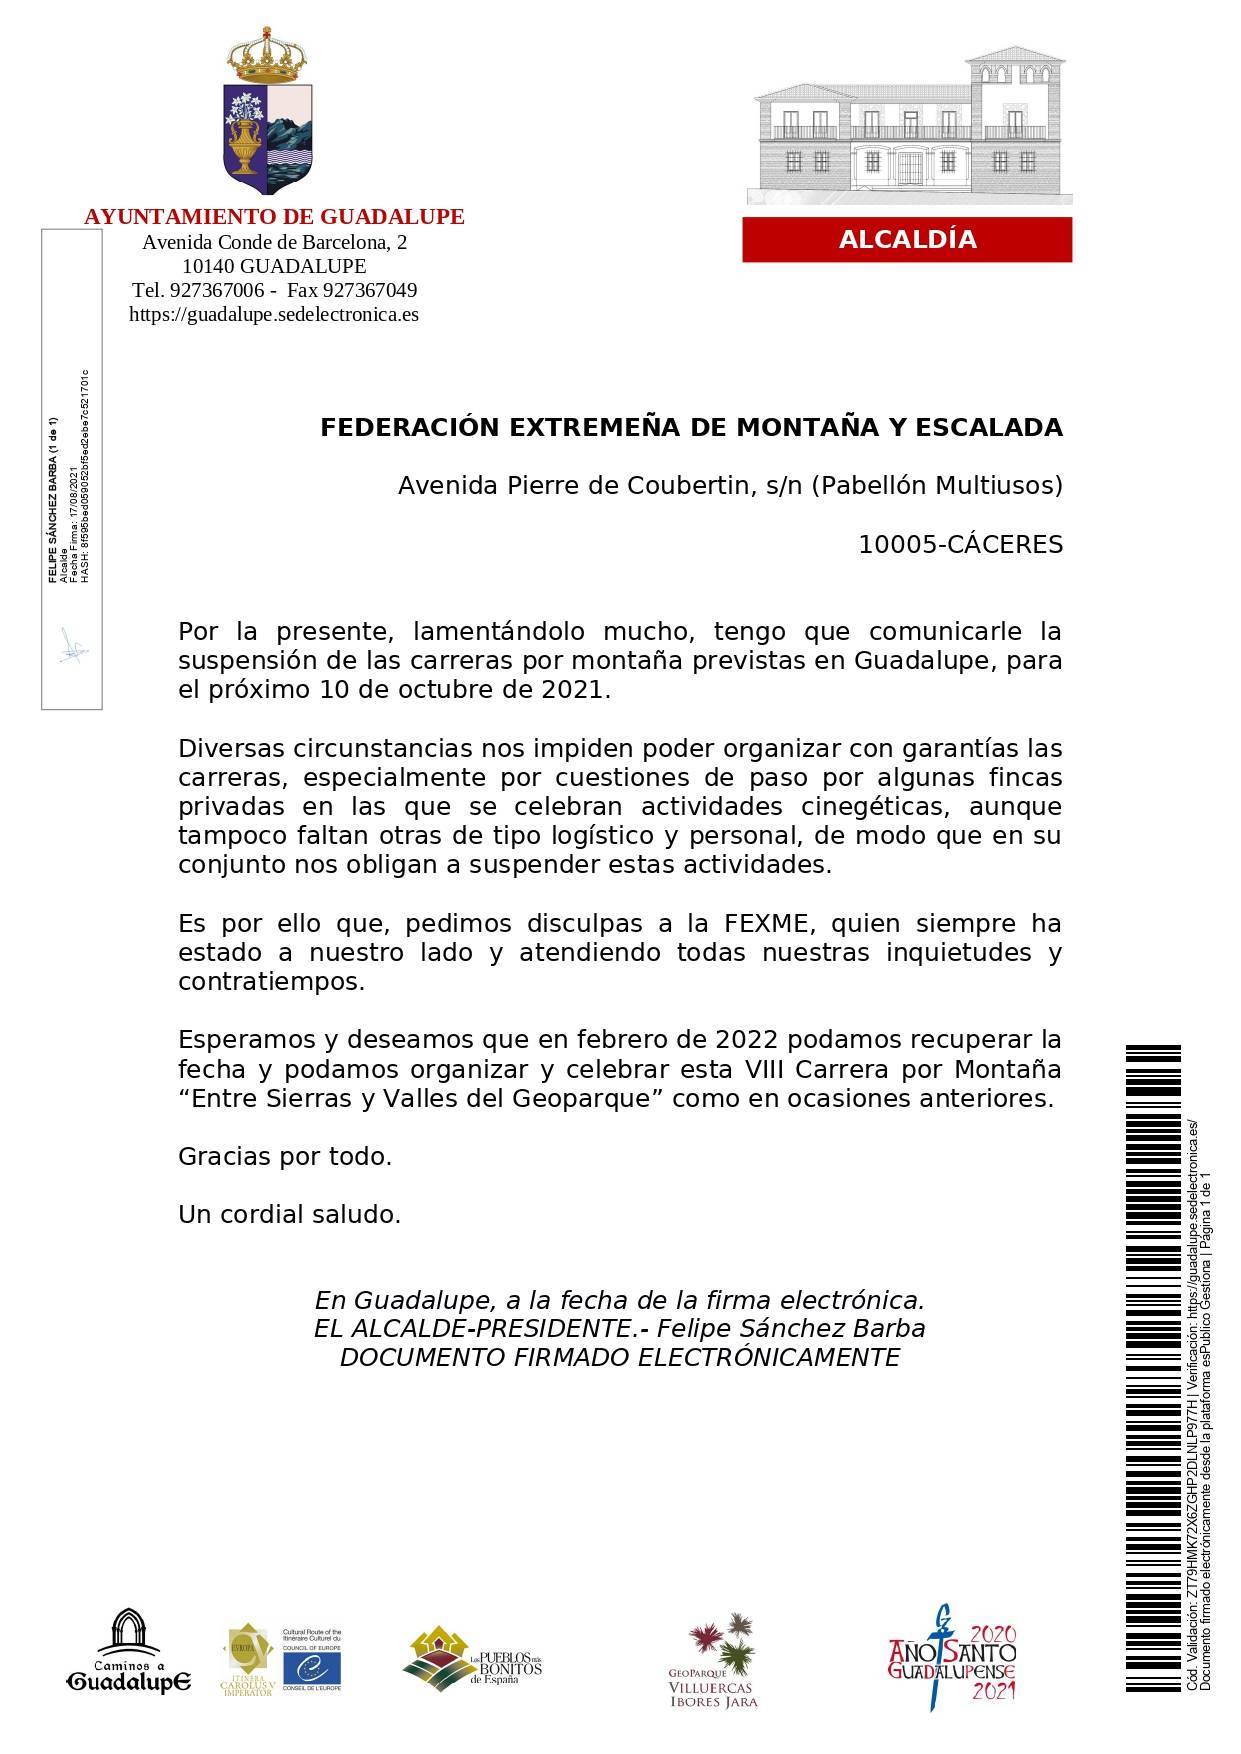 Se suspende la VIII Carrera por Montaña 'Entre Sierras y Valles del Geoparque' (2021) - Guadalupe (Cáceres)